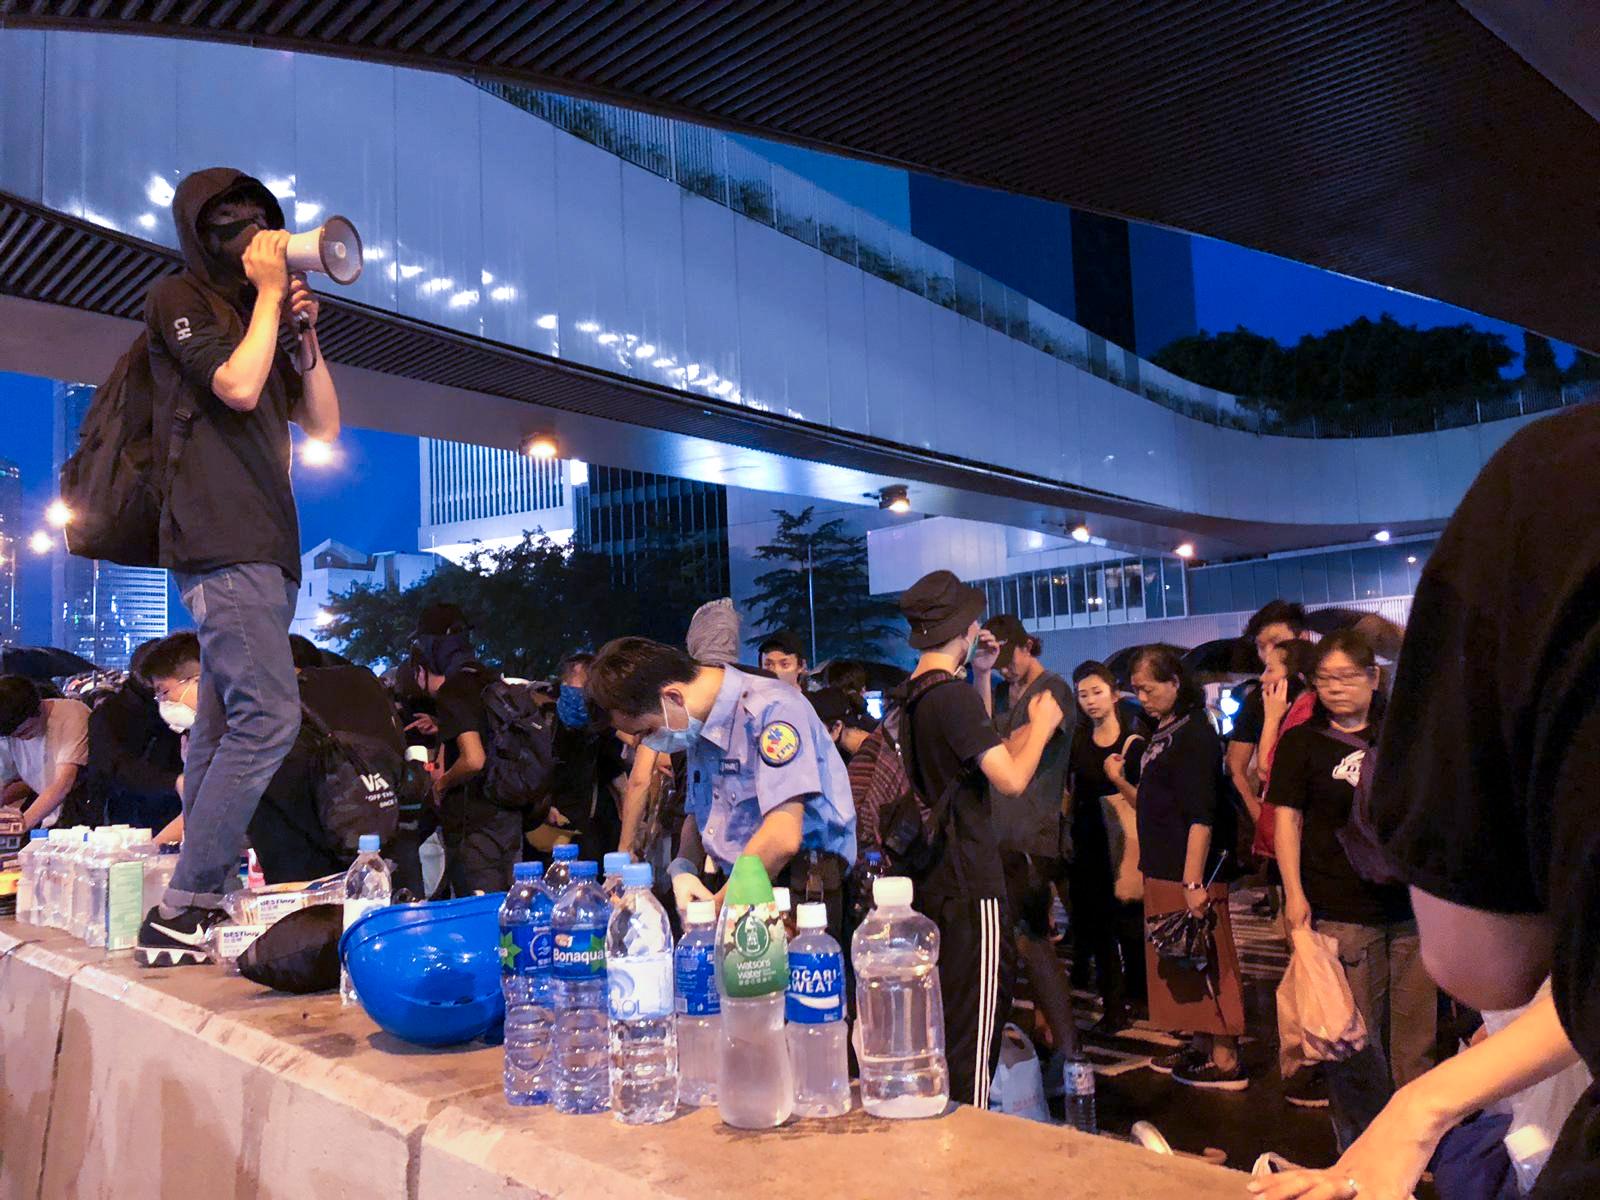 Demonstranter bunkrar vatten och produkter för att tvätta ögonen rena från tårgas.